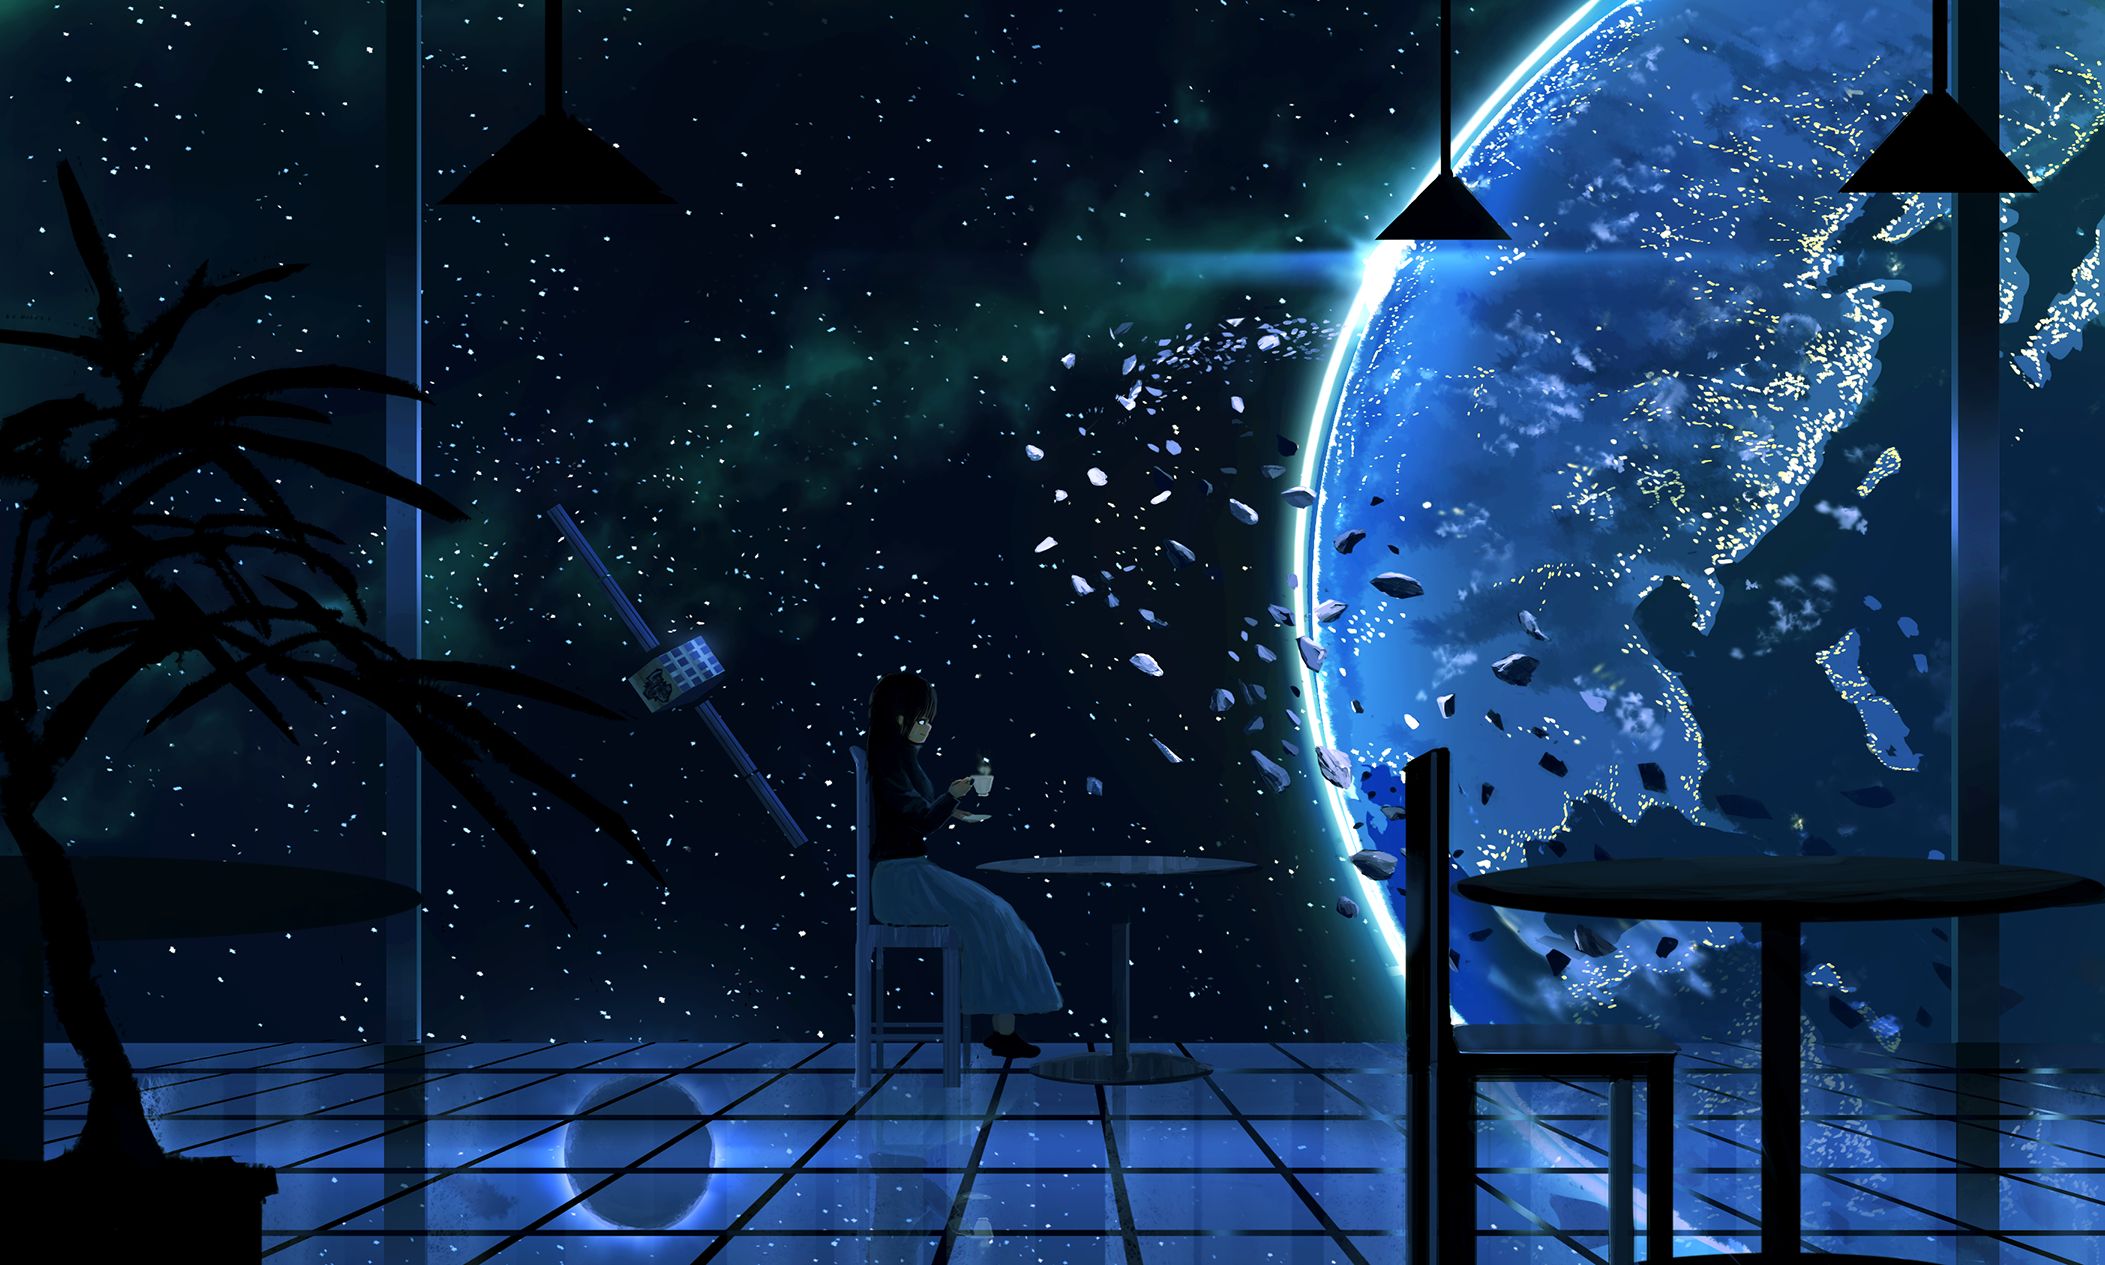 Скачать обои бесплатно Аниме, Ночь, Планета, Оригинал картинка на рабочий стол ПК